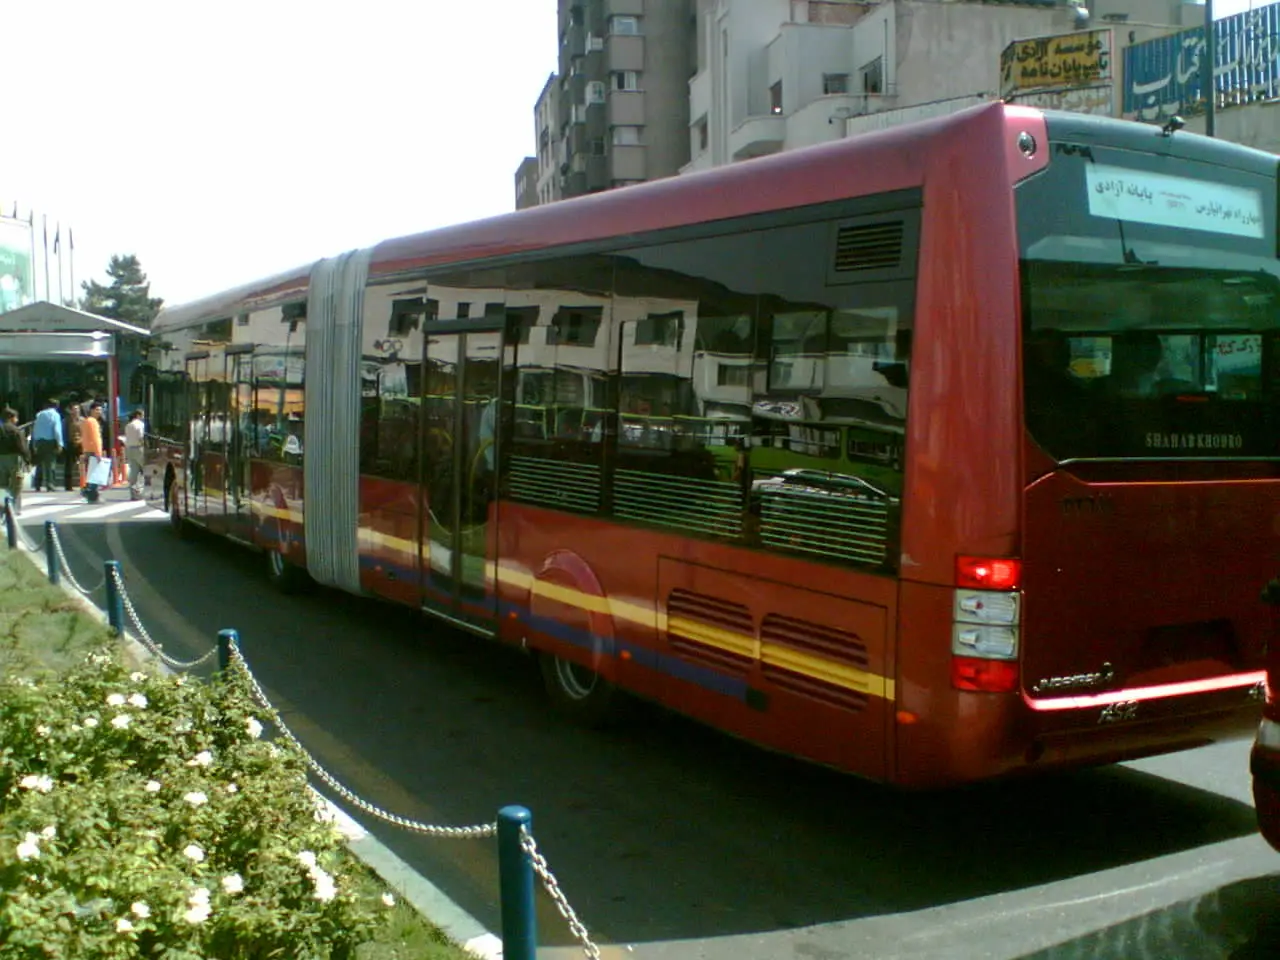 49 مبتلا و 28 نفر مشکوک به کرونا در اتوبوسرانی تهران